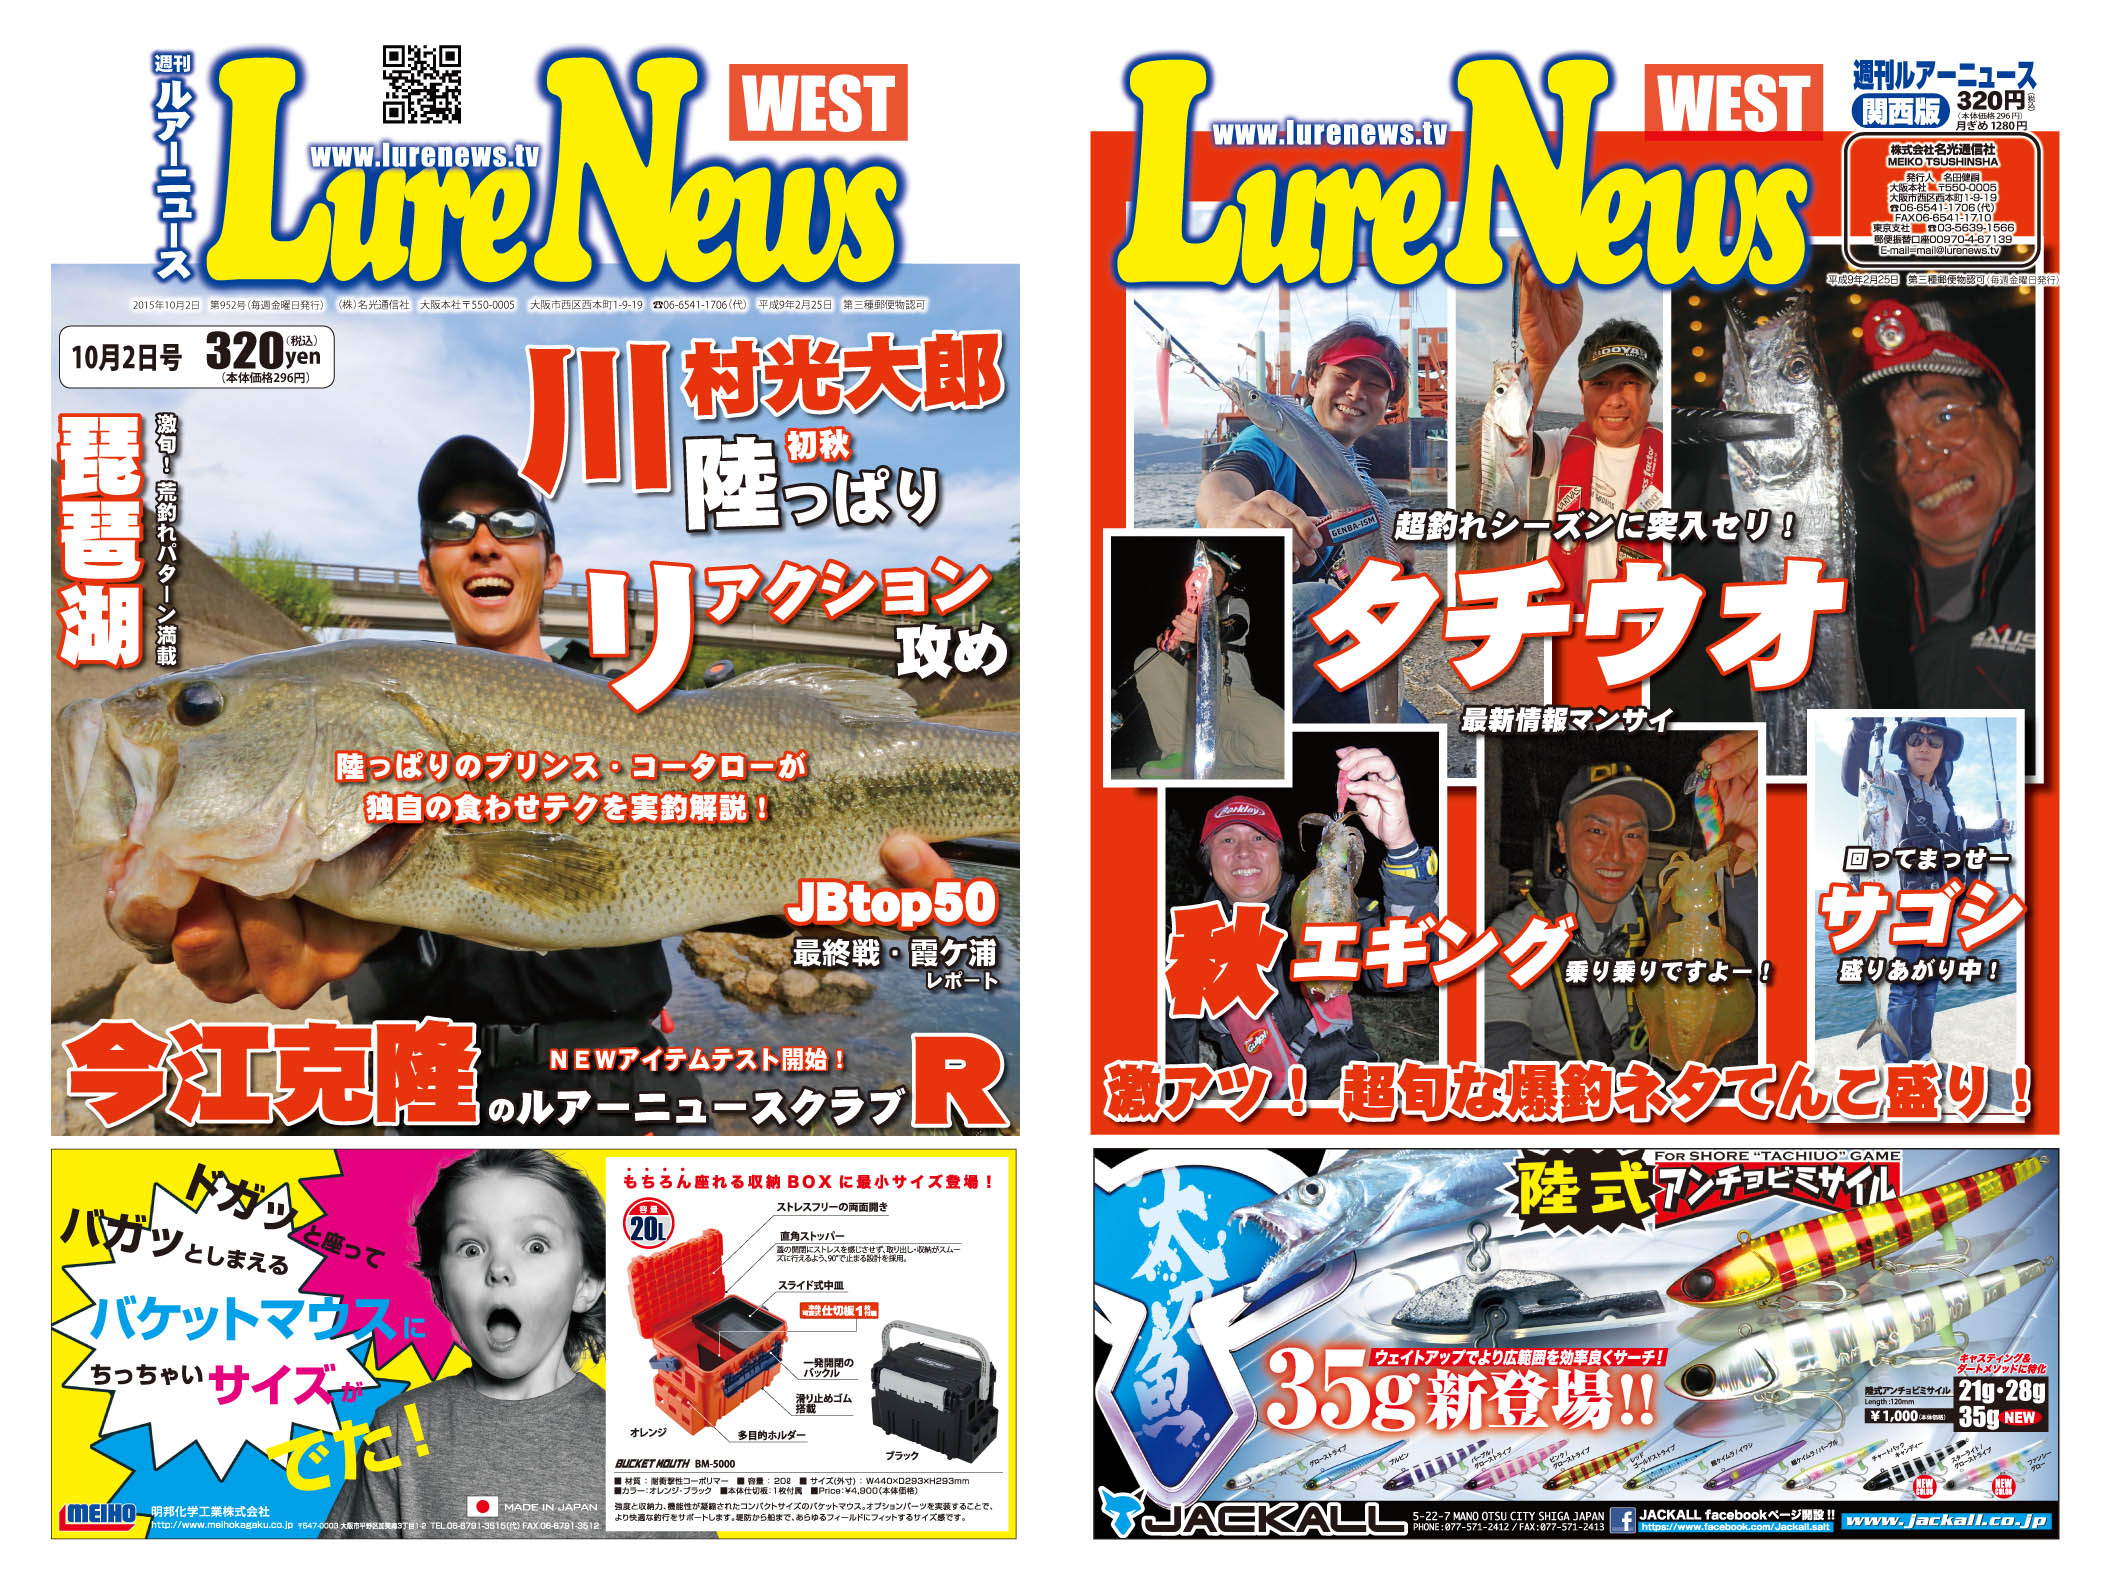 http://lurenews.tv/west952hyoushi.jpg